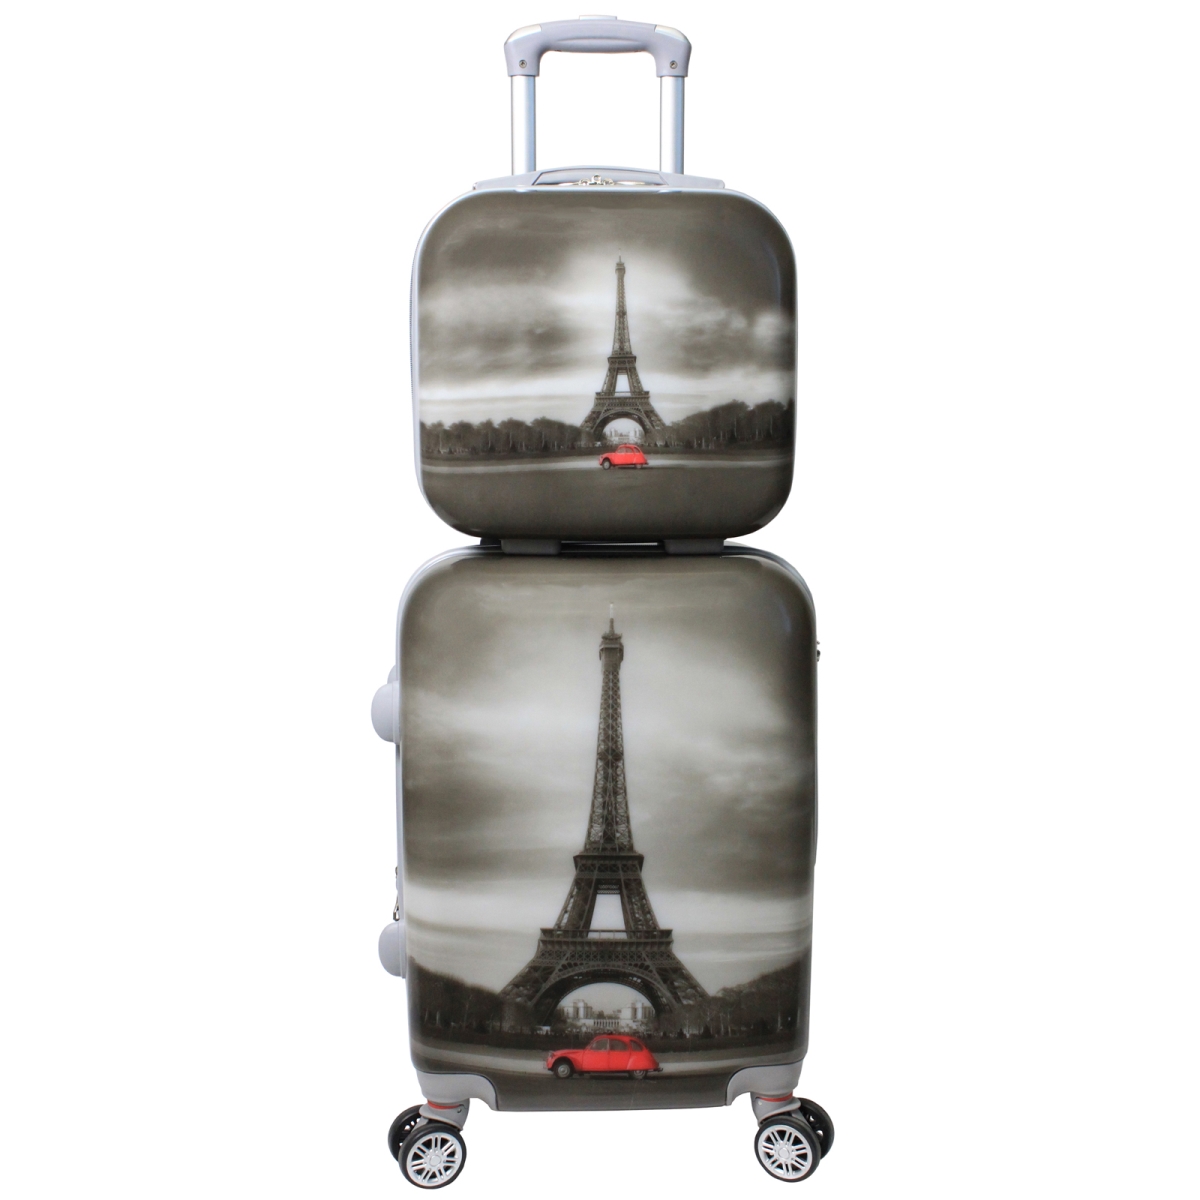 Destination Collection 2-piece Luggage Set, Paris